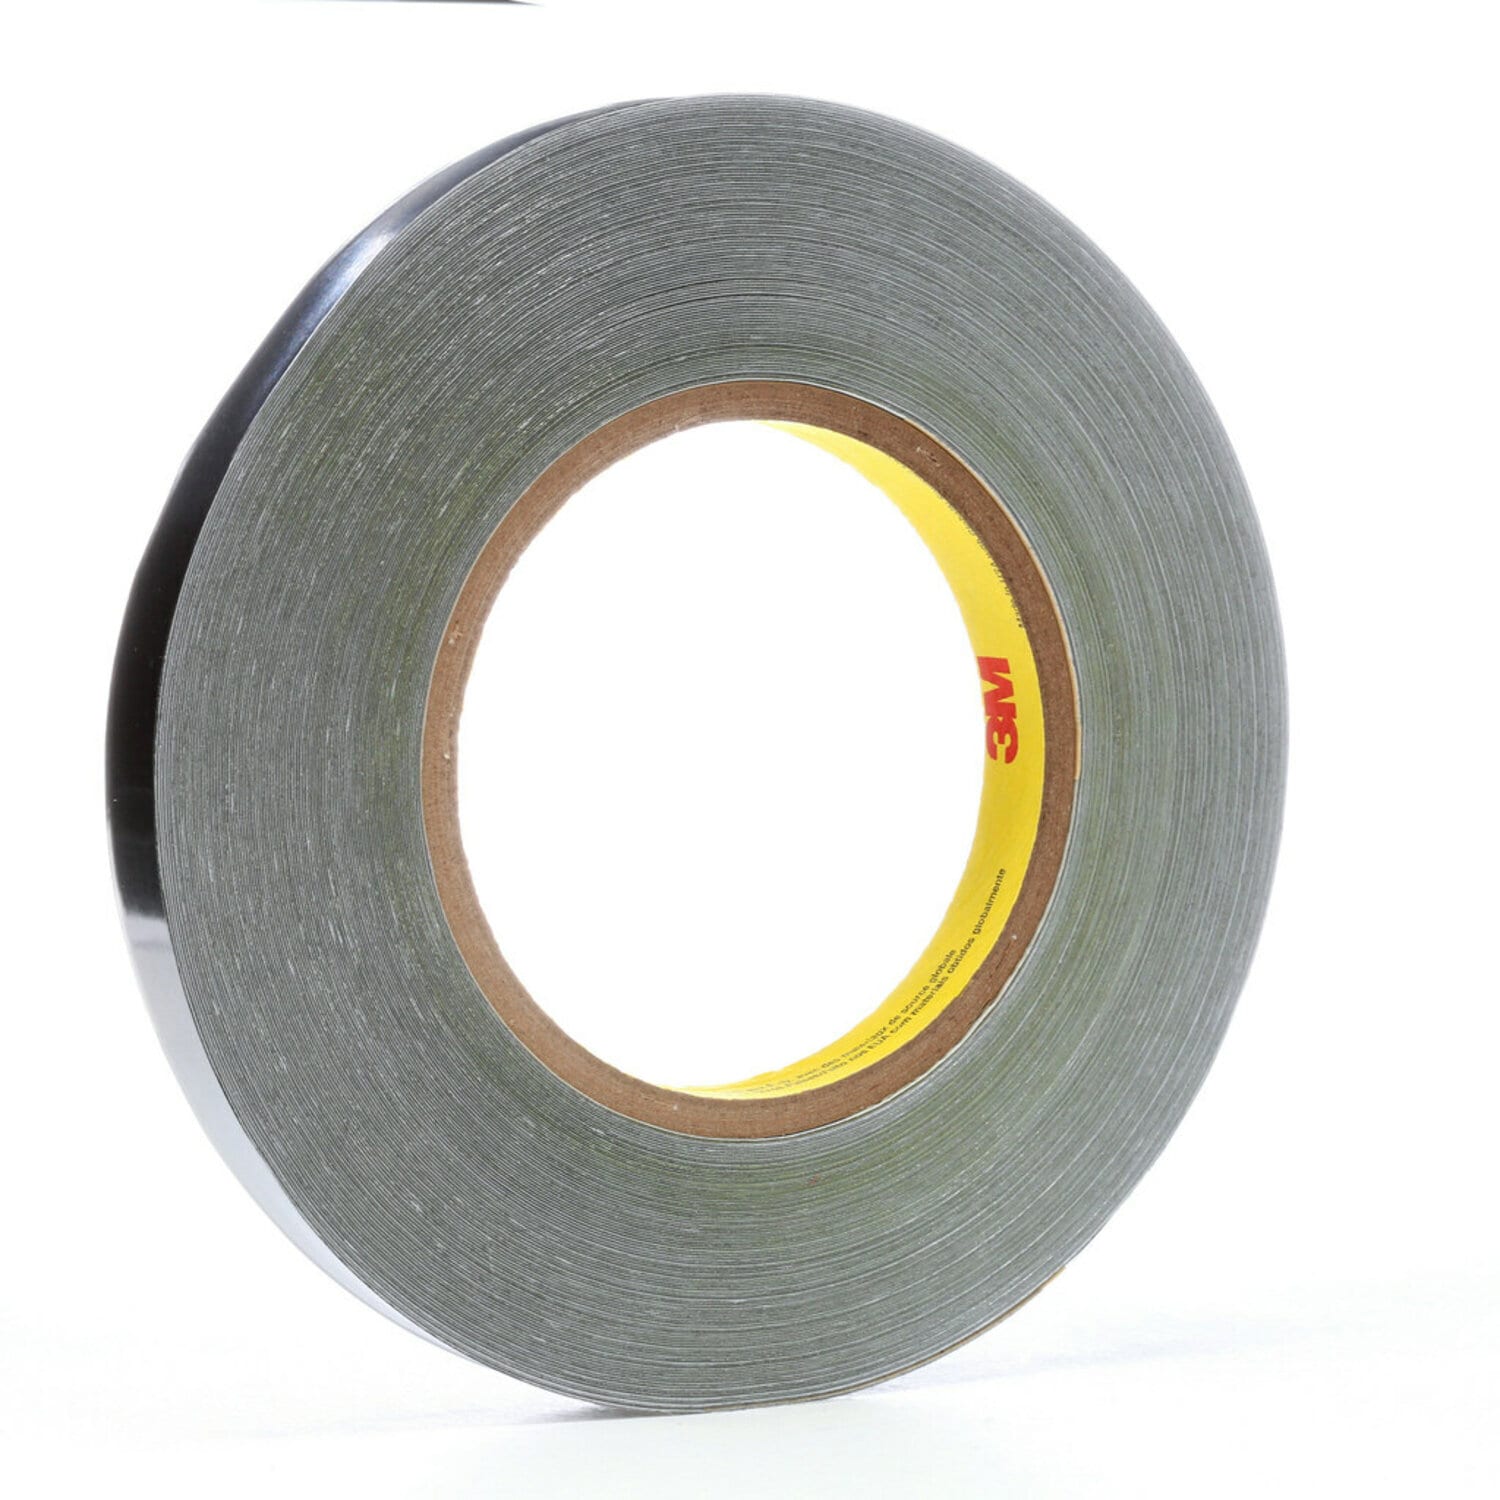 7100221191 - 3M Lead Foil Tape 420, Dark Silver, 5/8 in x 36 yd, 6.8 mil, 12 Rolls/Case